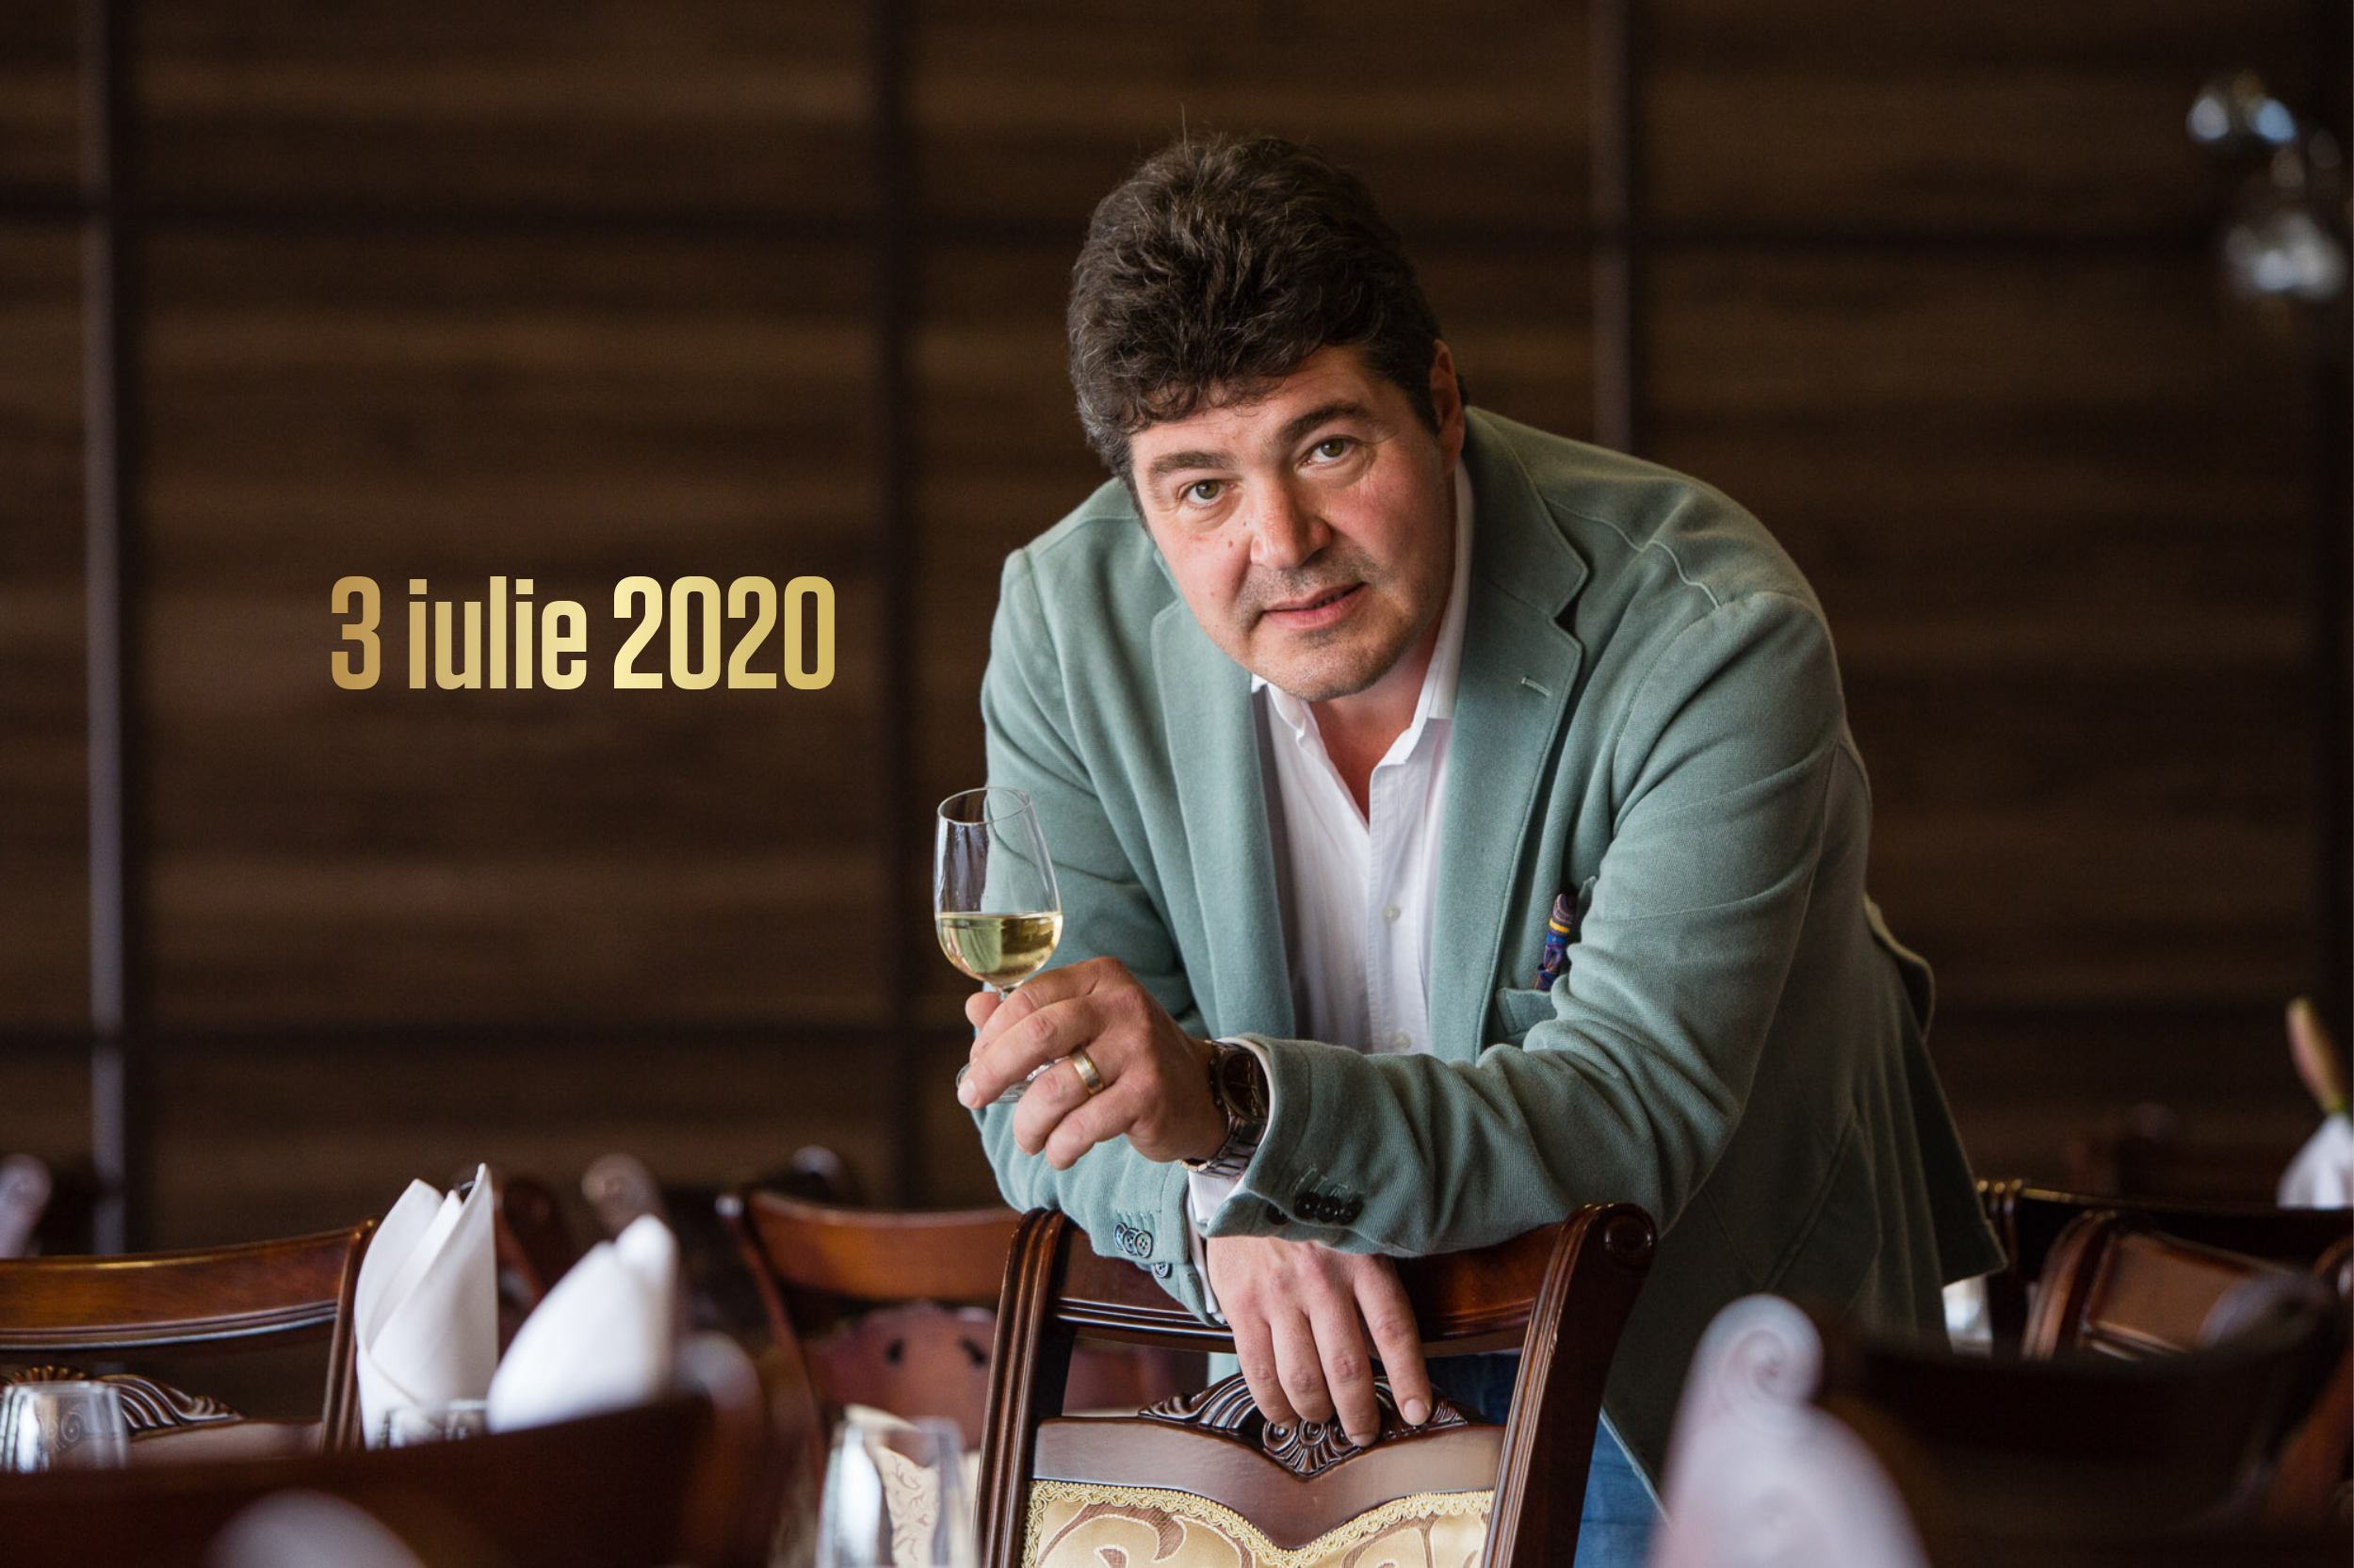 03 - 05 iunie 2020 – Ce vinuri bem în acest weekend, 3 vinuri pentru 3 seri. Recomandările lui Cătălin Păduraru, Preşedintele VINARIUM International Wine Contest